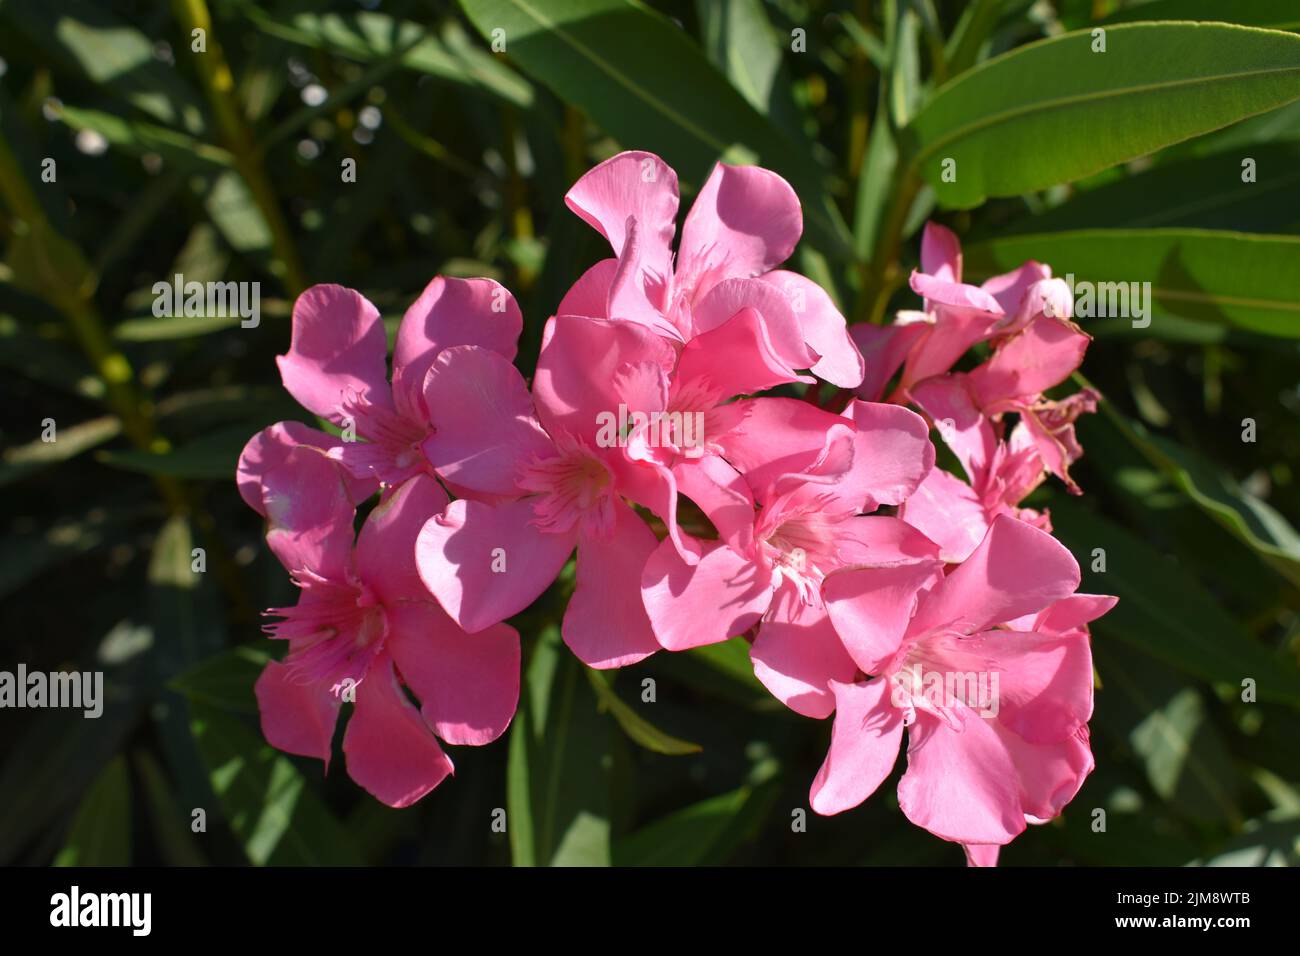 Fleurs d'oléfines roses (nom latin, nérium oléander) , plus communément connu sous le nom d'oléfines ou nerium, est un arbuste ornemental ou un petit arbre cultivé Banque D'Images